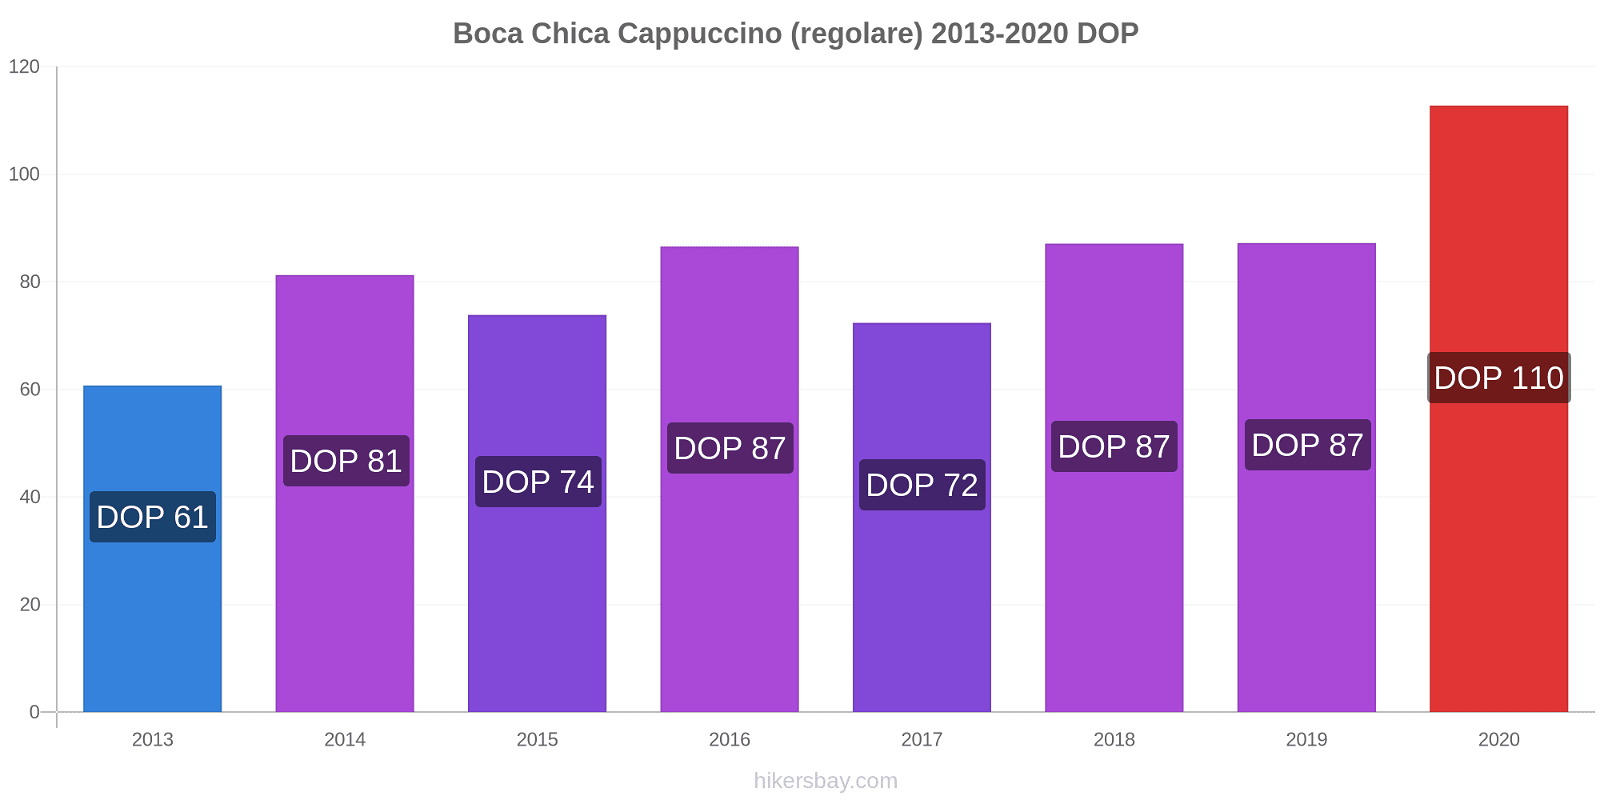 Boca Chica variazioni di prezzo Cappuccino (normale) hikersbay.com